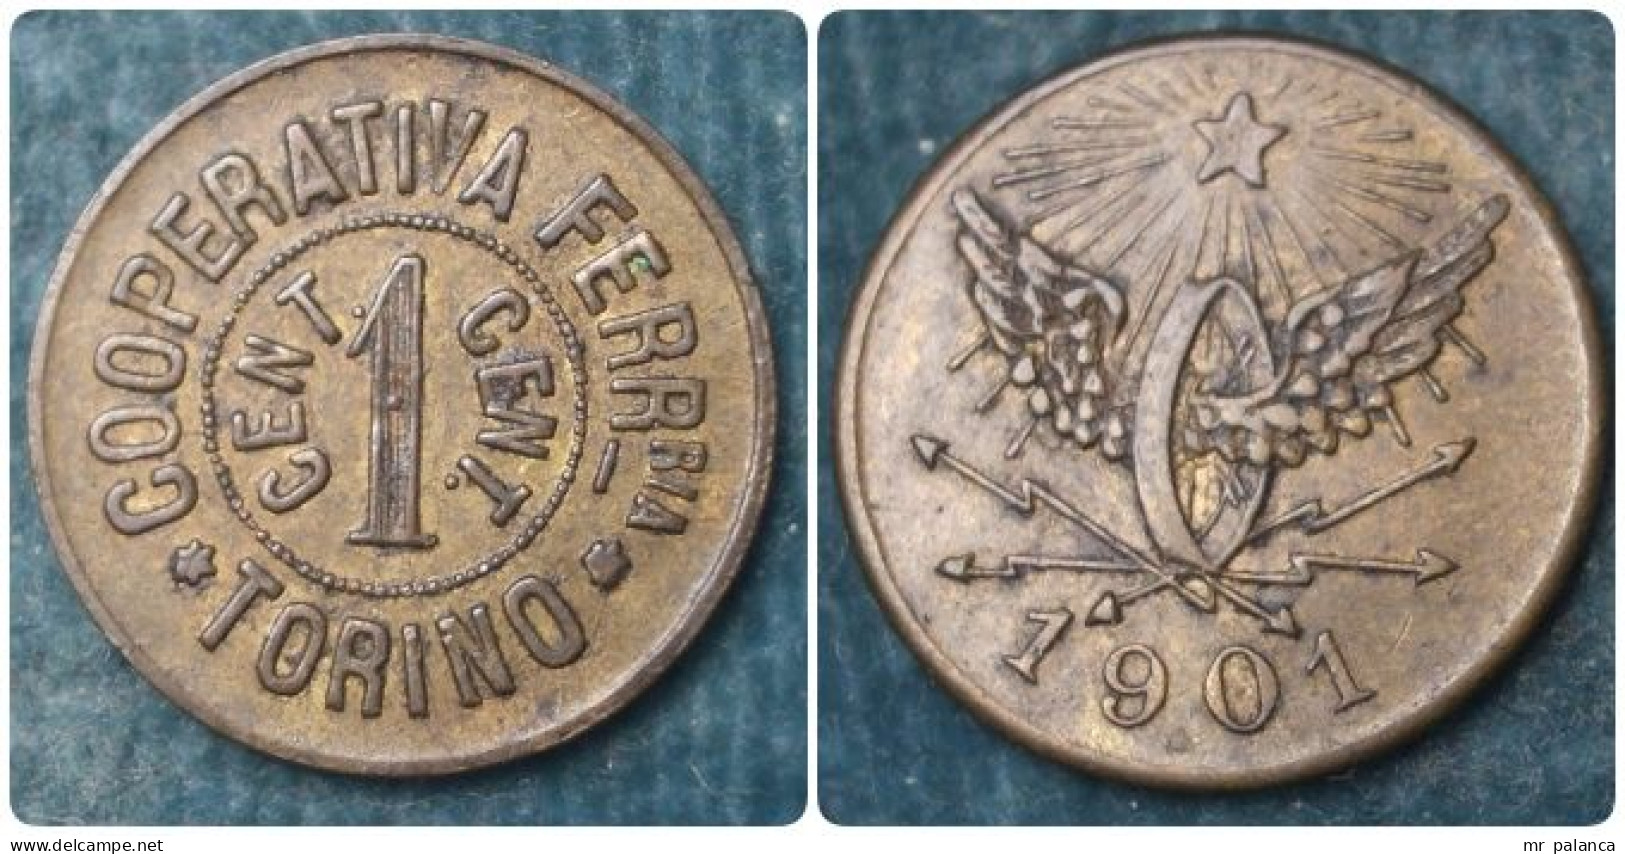 M_p> Gettone Trasporti " COOPERATIVA FERR-RIA TORINO 1 CENT. " Altro Lato Ruota Alata E Data " 1901 " - Monetary/Of Necessity